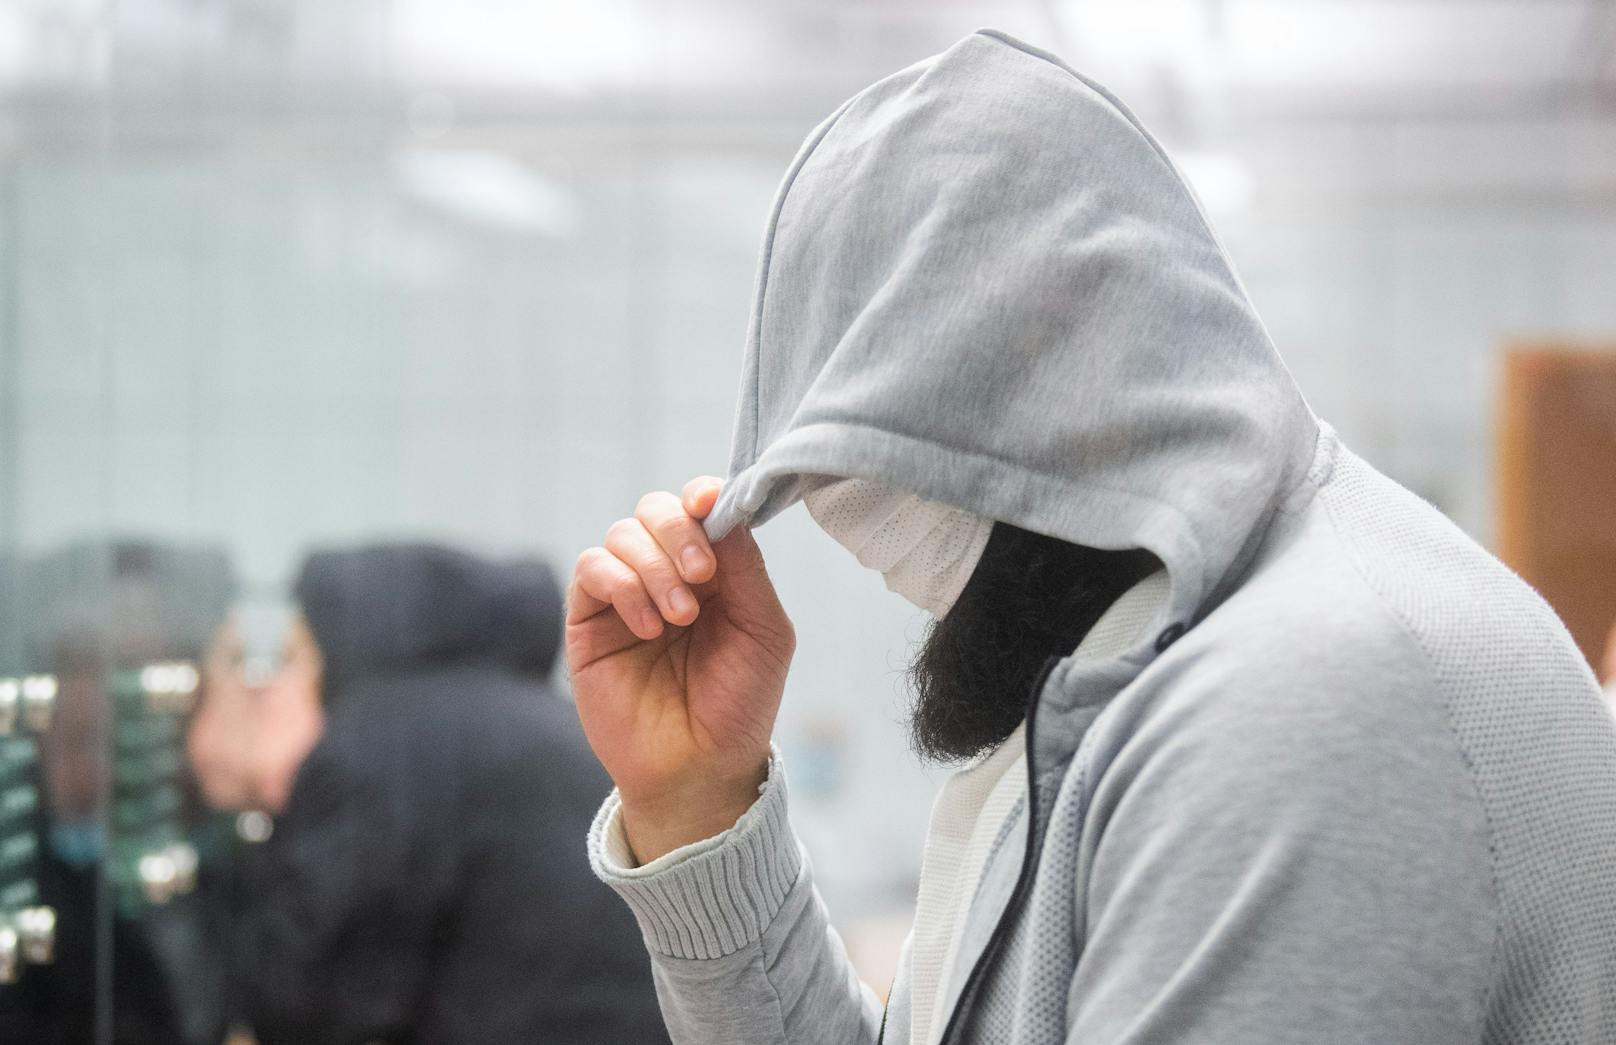 Der Deutschland-Chef der Terror-Miliz IS Abu Walaa wurde am Mittwoch zu zehneinhalb Jahre Haft verurteilt.